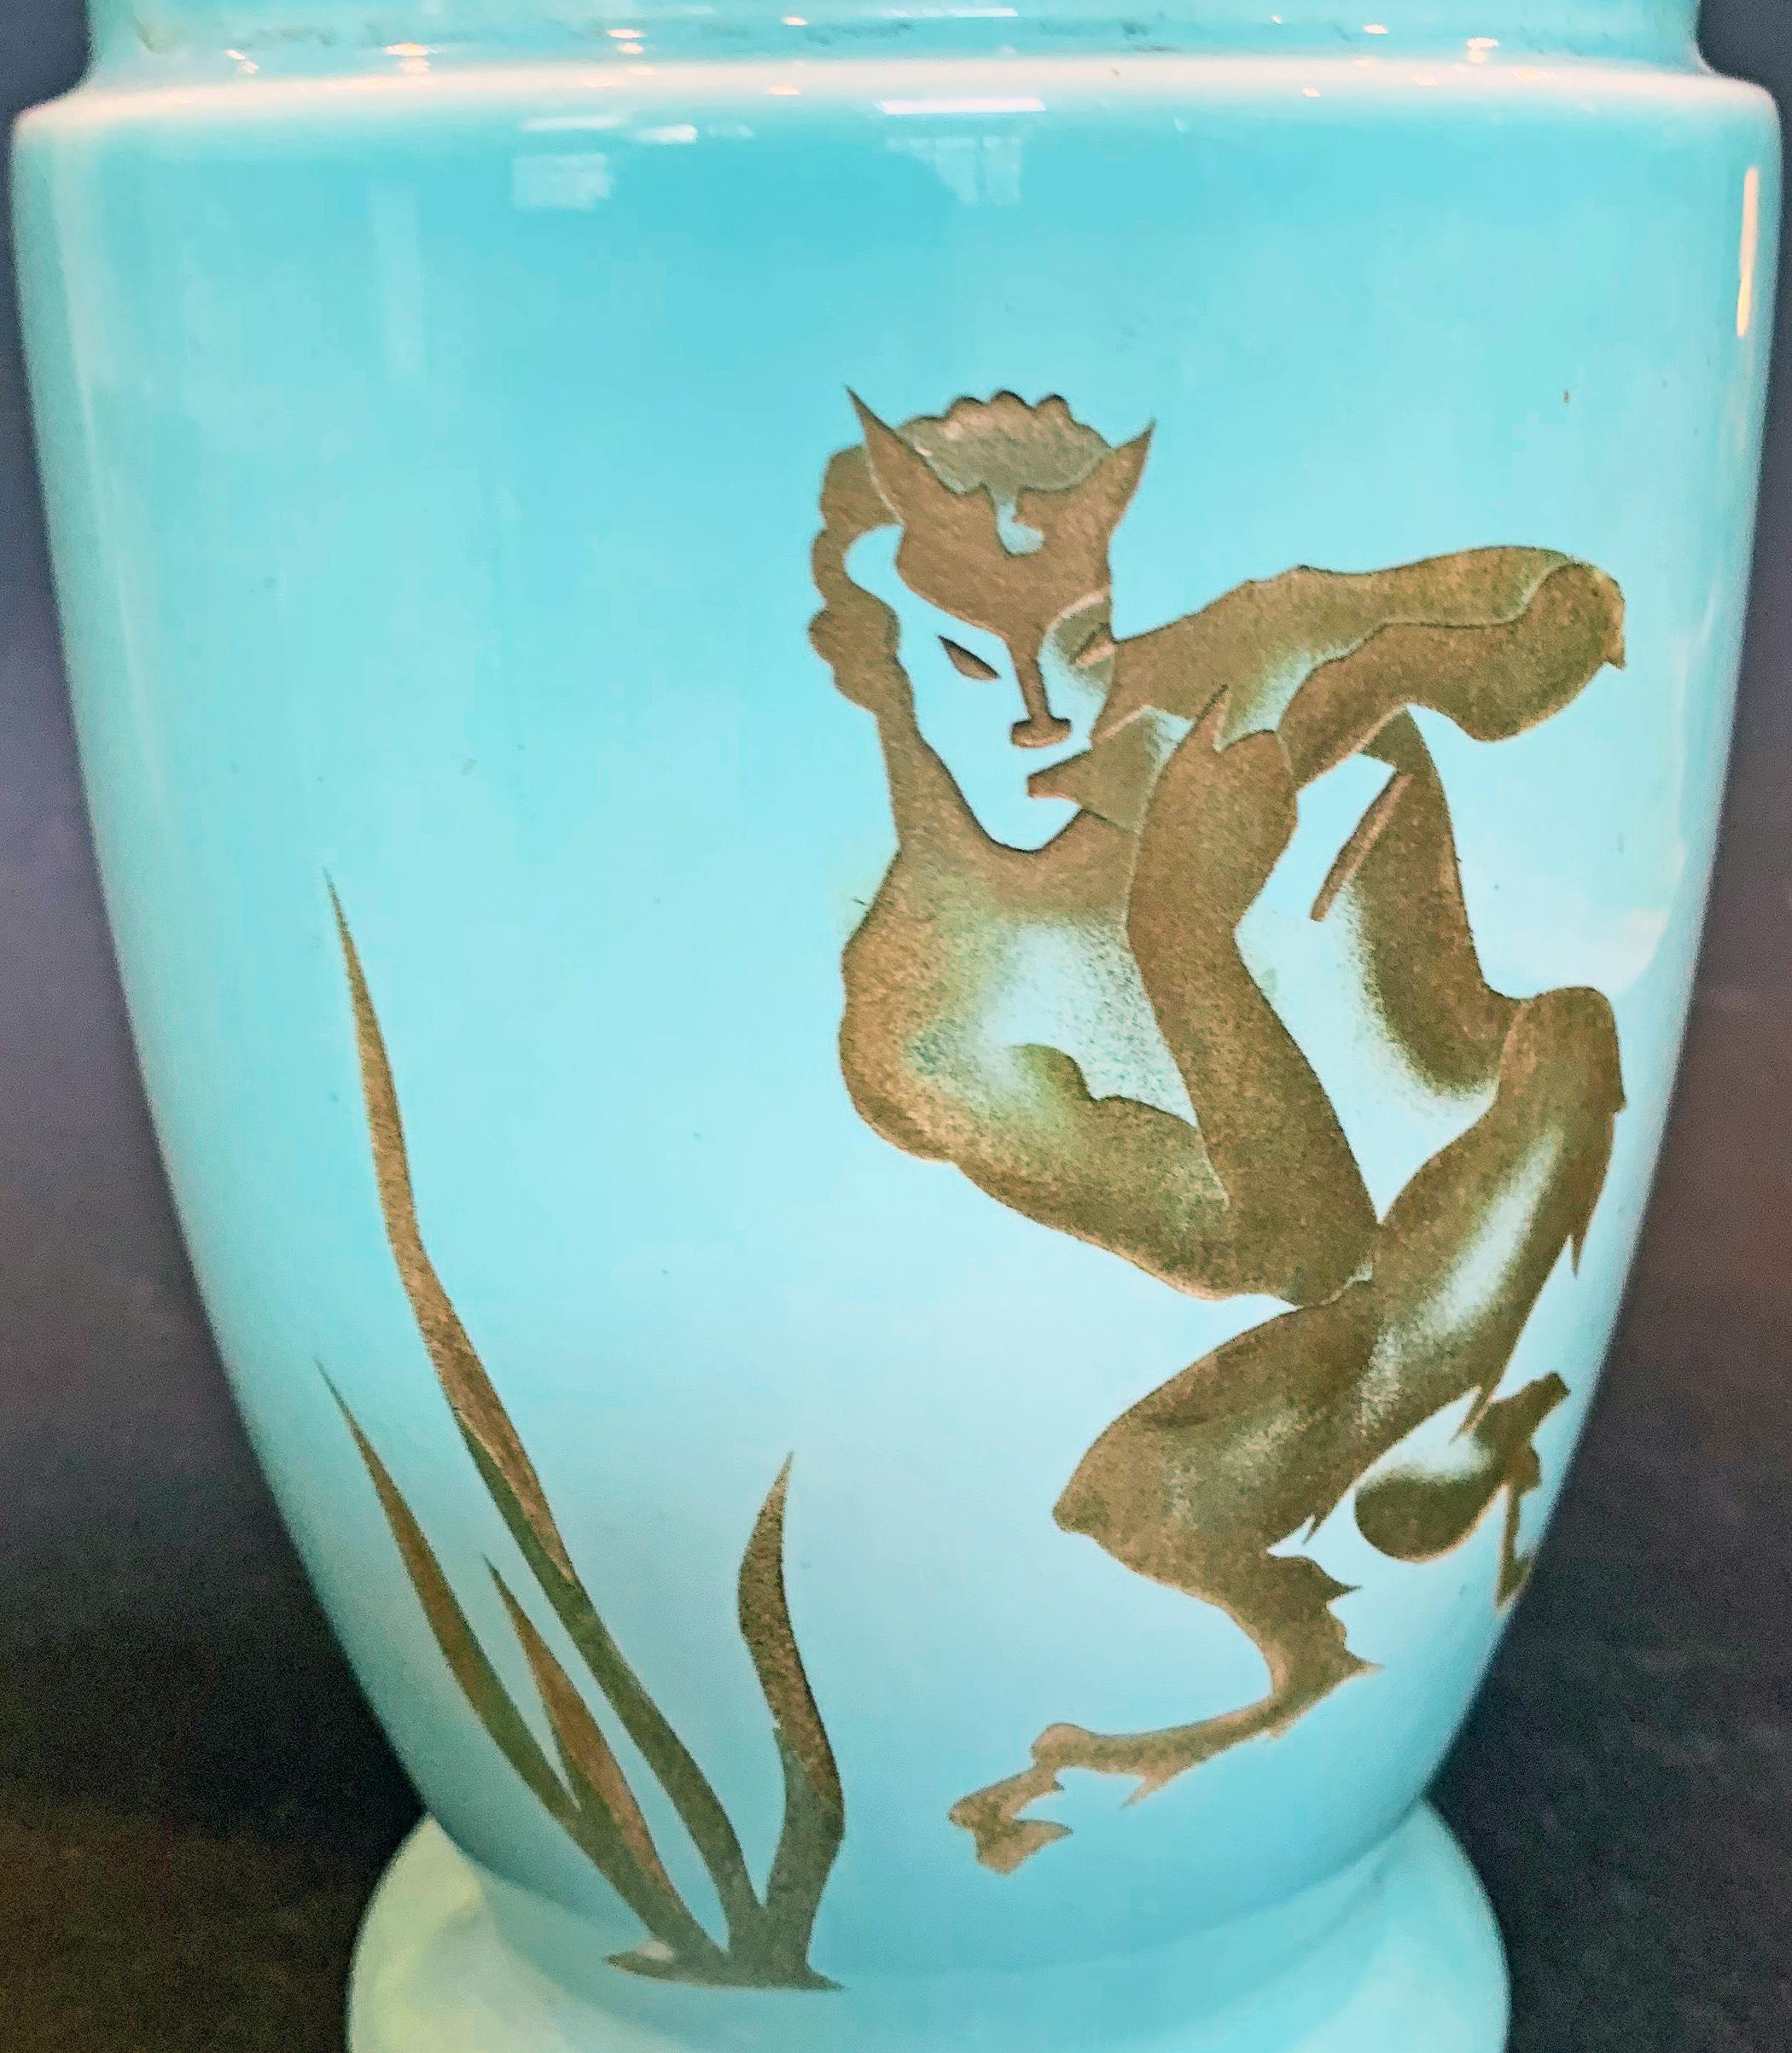 À notre connaissance, ce vase remarquable - produit par la célèbre Trenton Potteries Company dans les années 1930 - est unique. À partir d'un simple vase en céramique bleue, l'artiste a gravé sur la surface une figure de satyre dansant, jouant de la